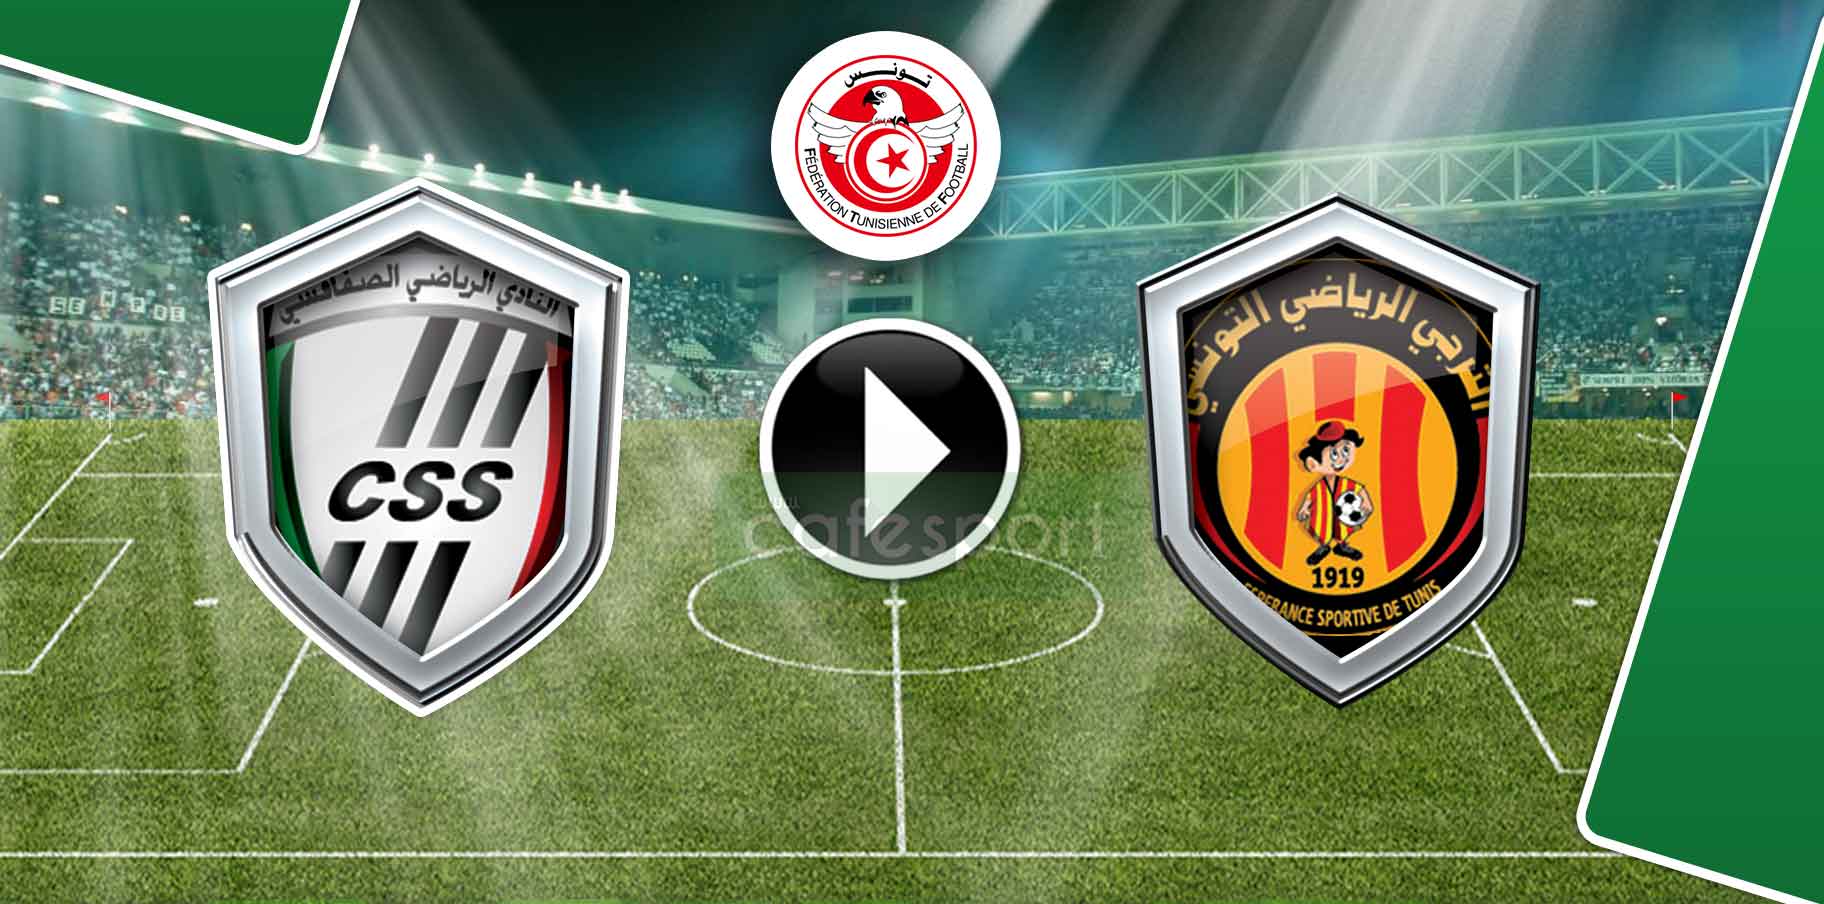 بث مباشر لمباراة النادي الصفاقسي-الترجي الرياضي التونسي